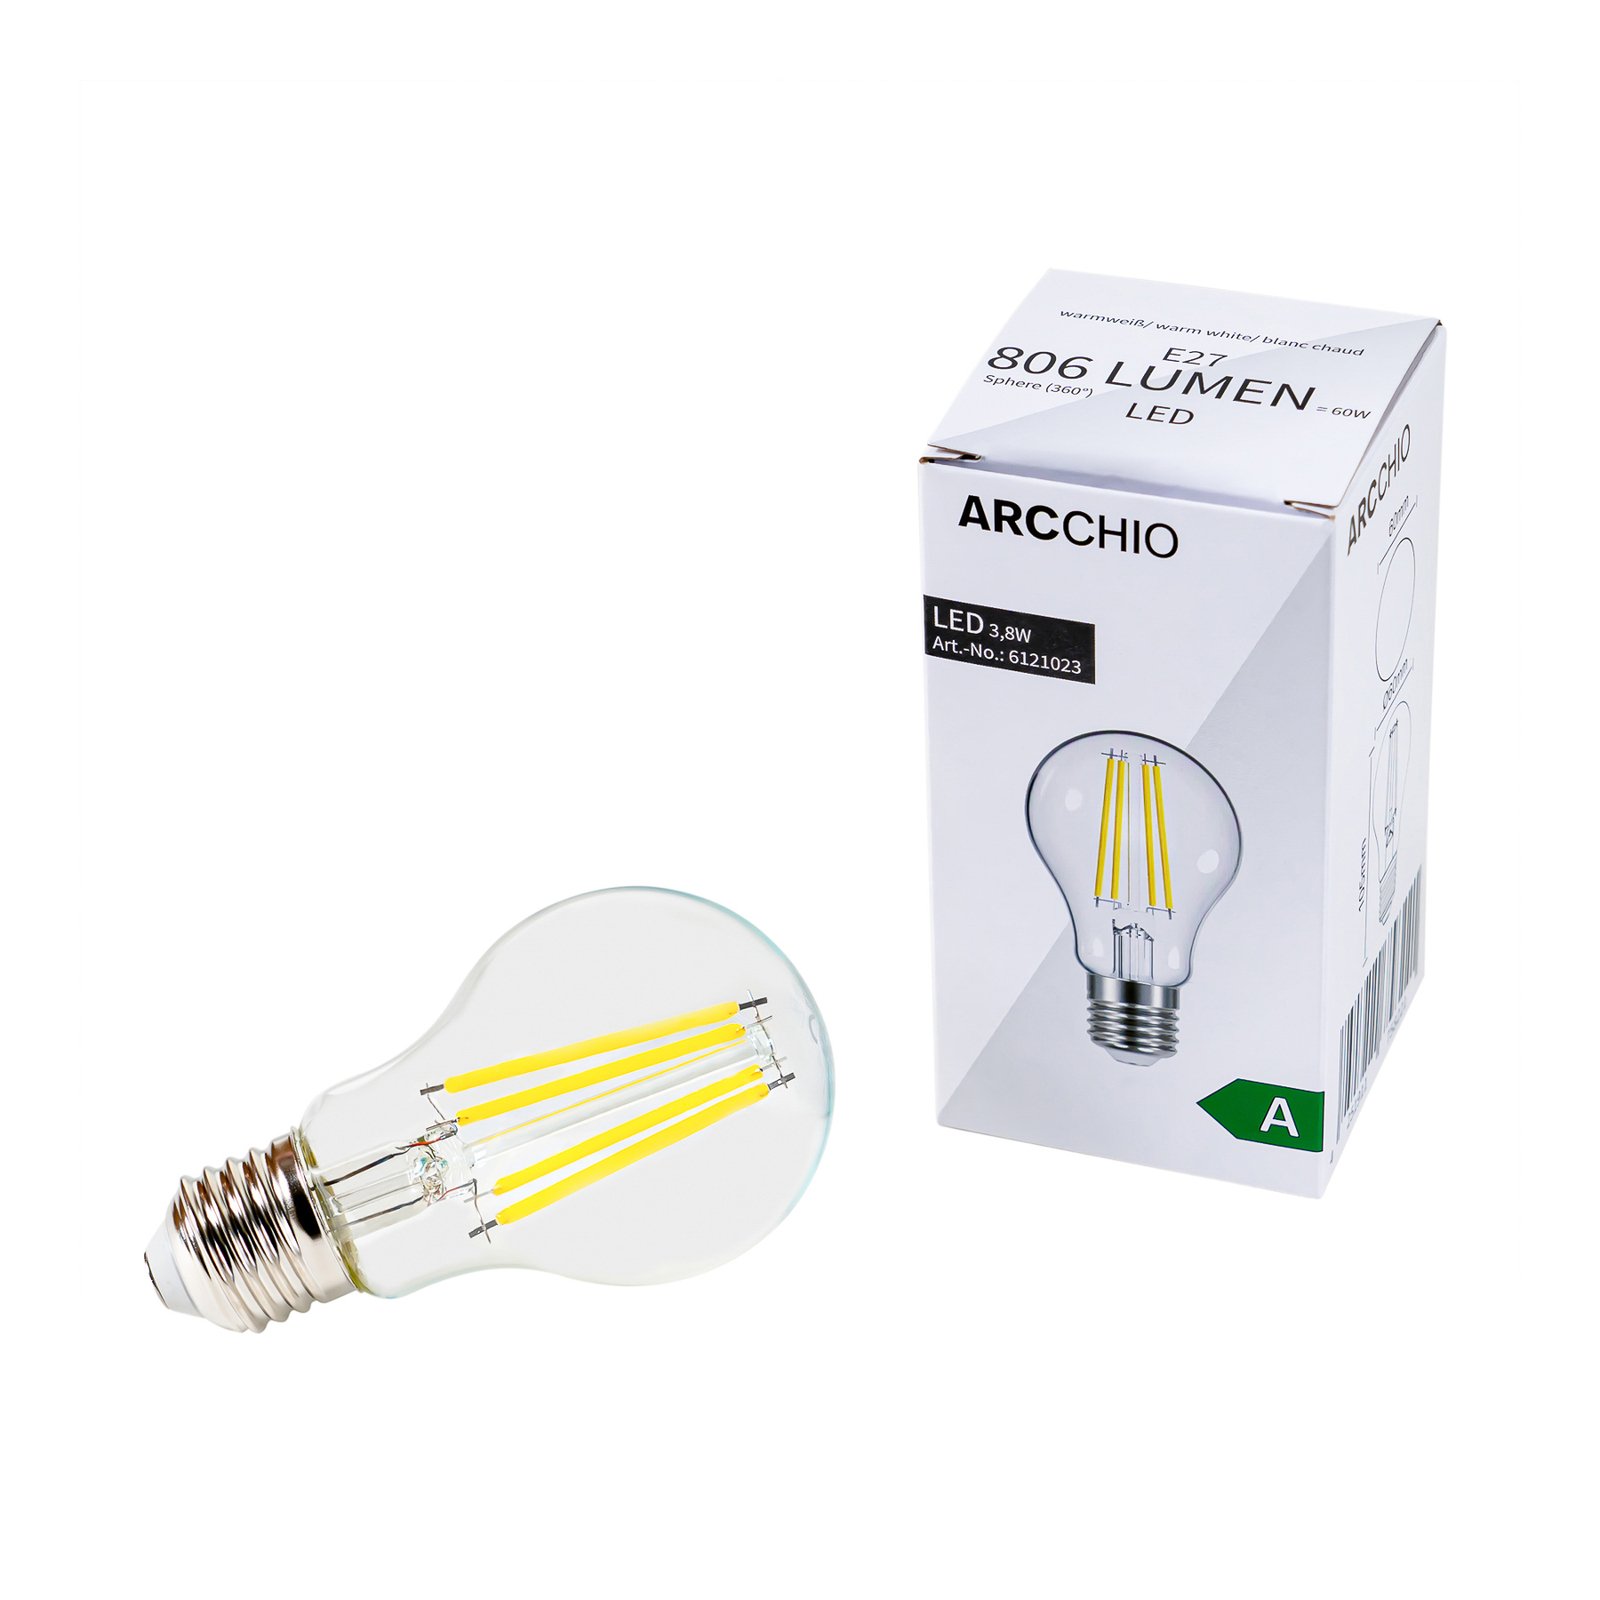 LED filament lamp E27 3,8W 830 806 Lumen 10/set